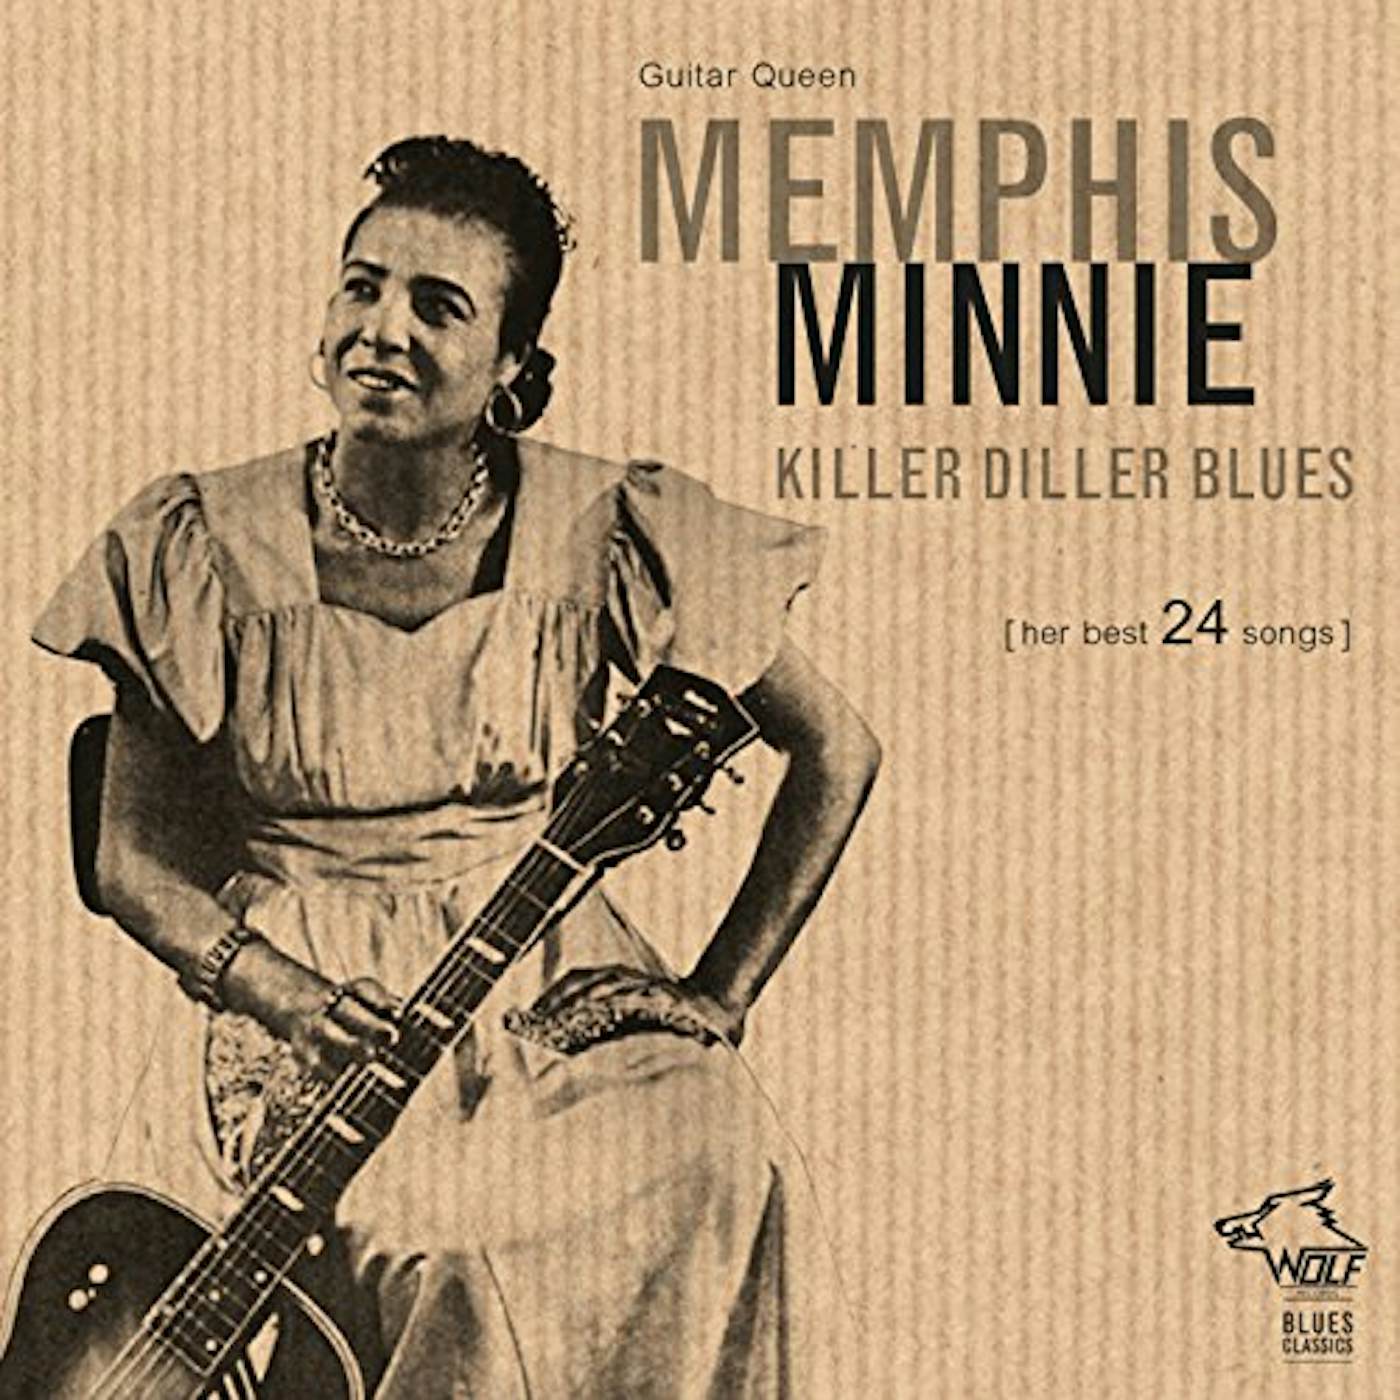 Memphis Minnie KILLER DILLER BLUES CD